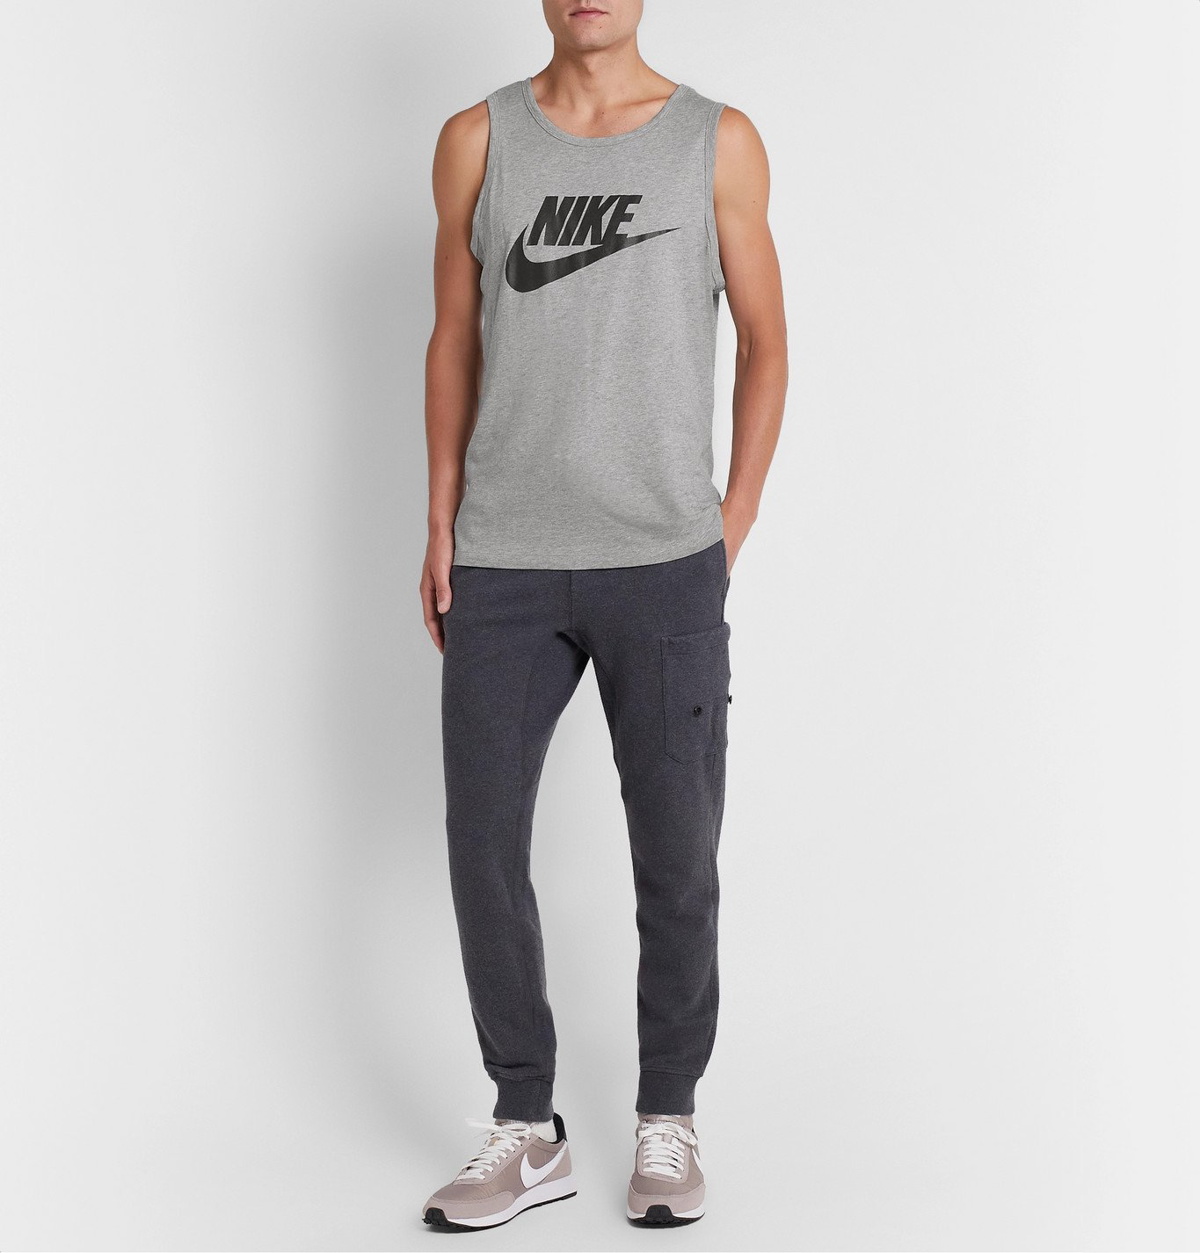 Nike Club tank top in gray